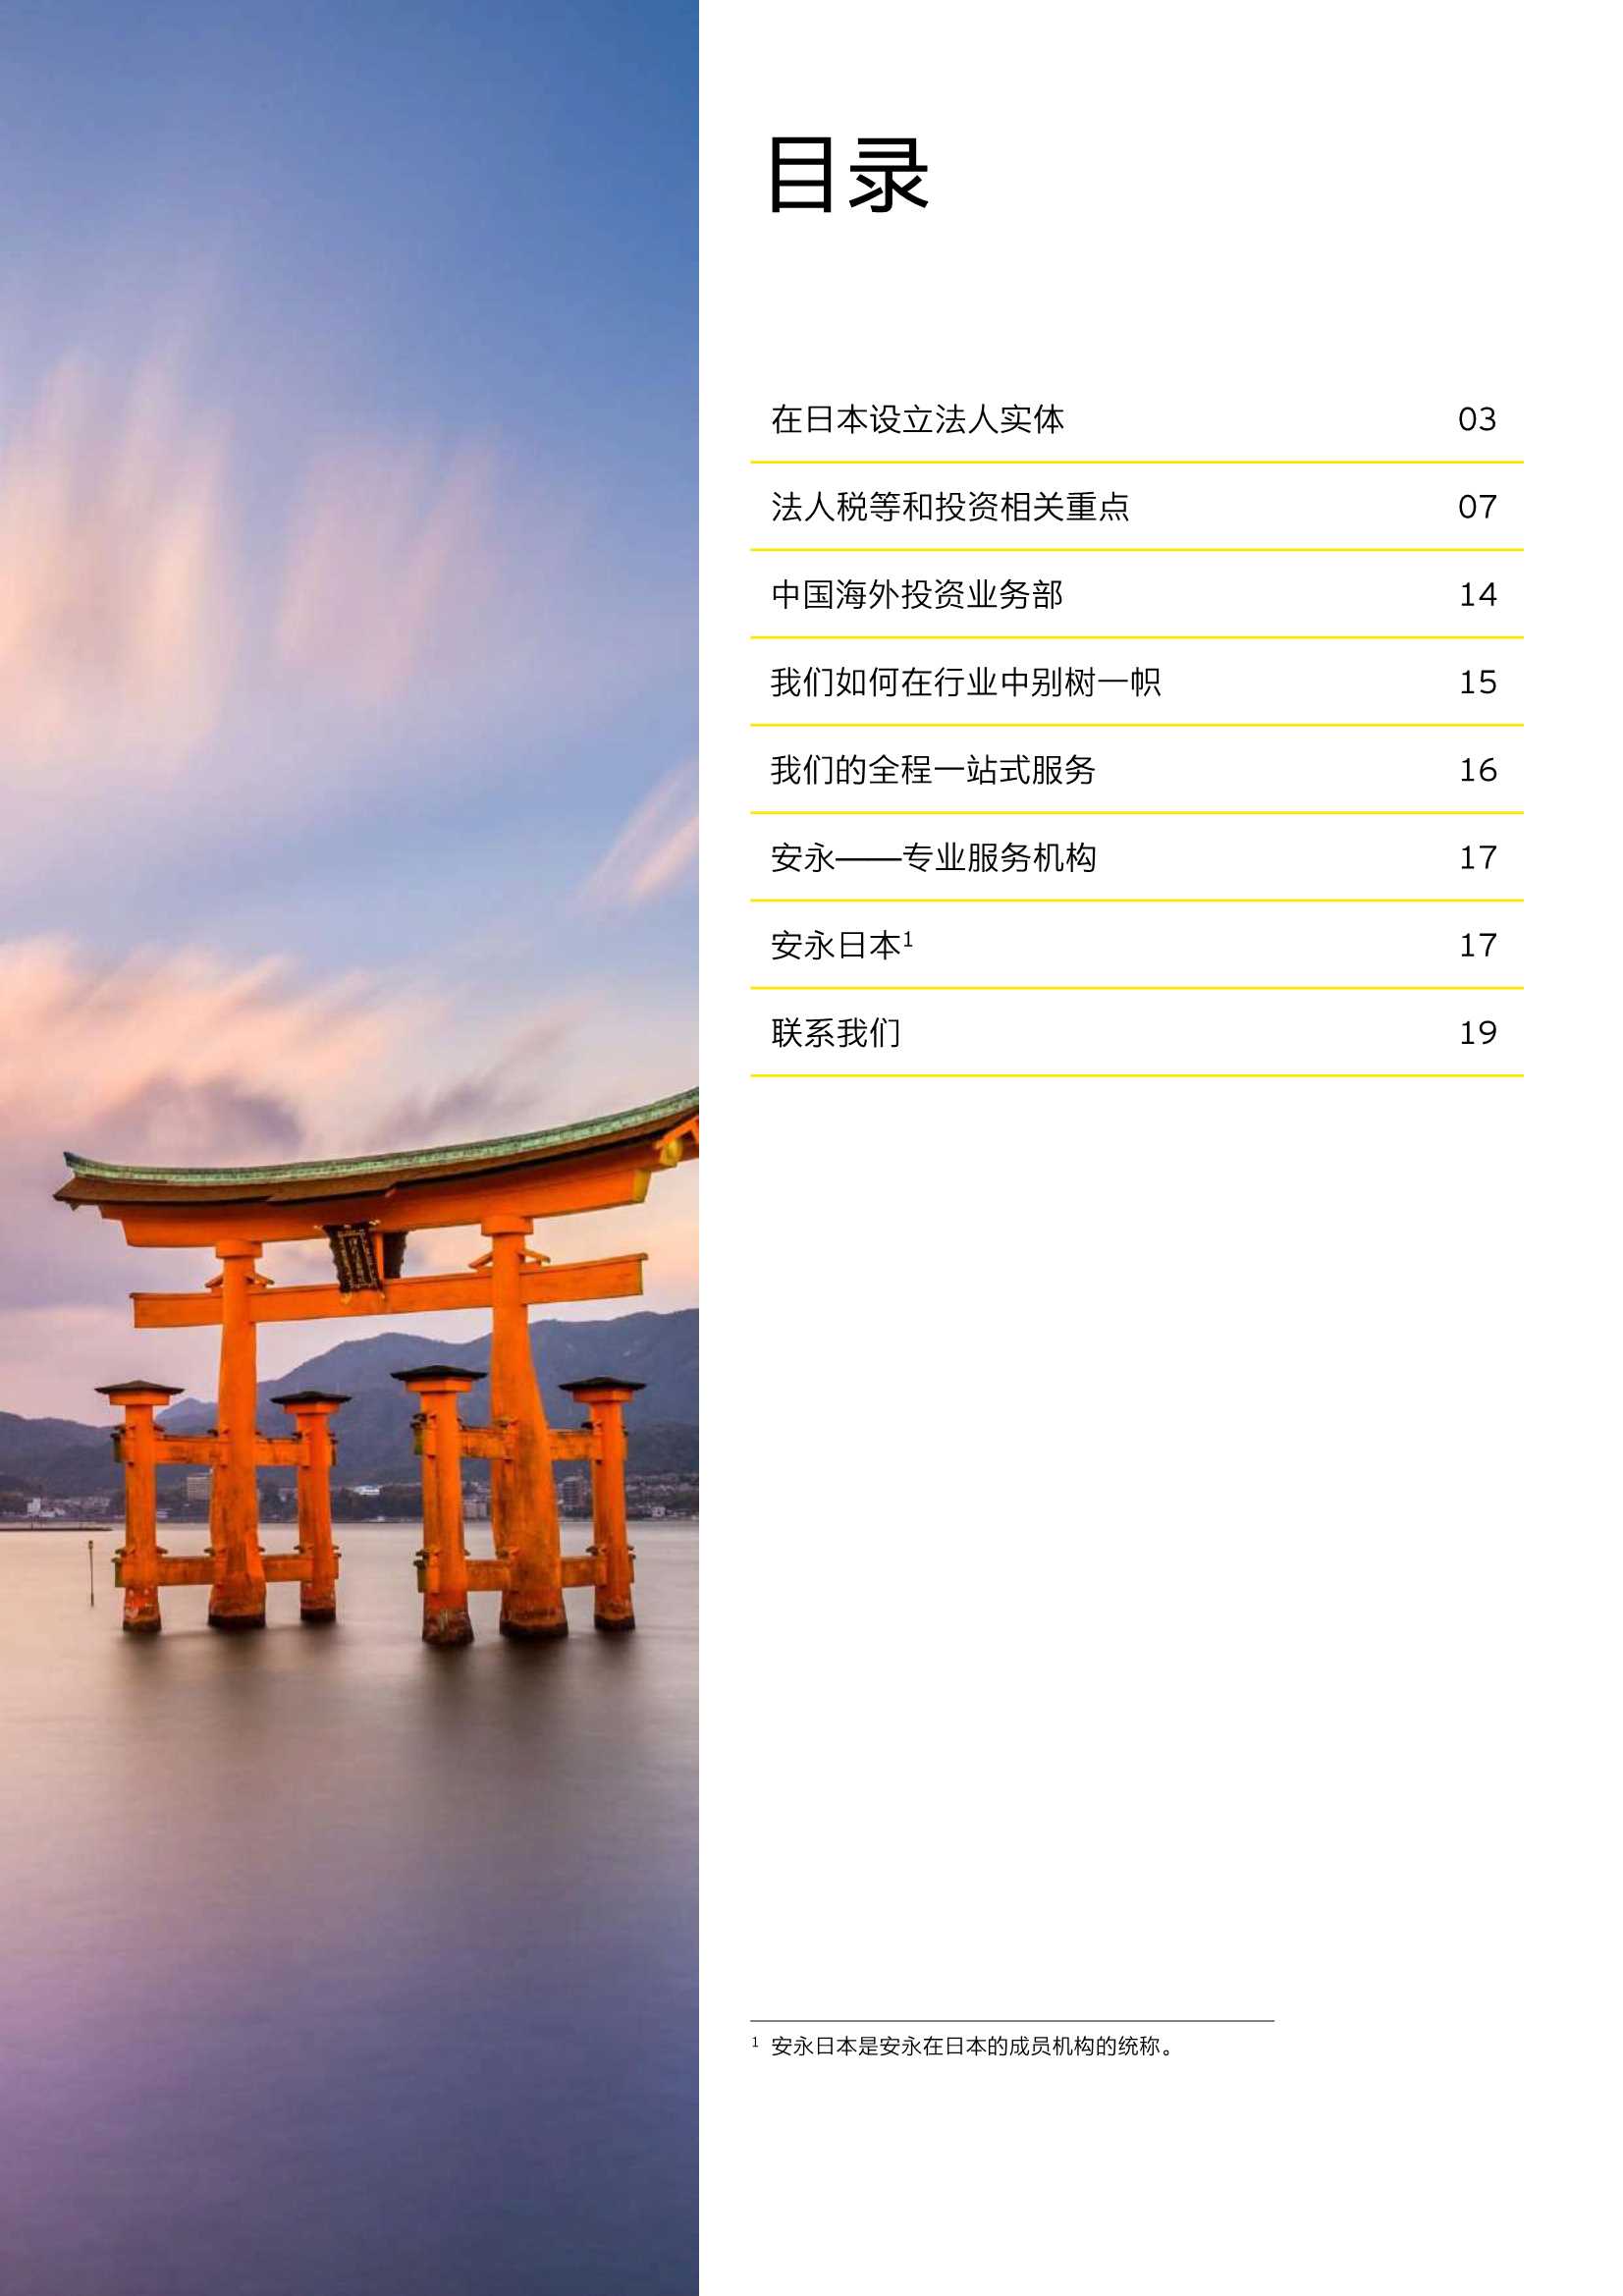 2022年在日本投资经营手册-2022.02-40页